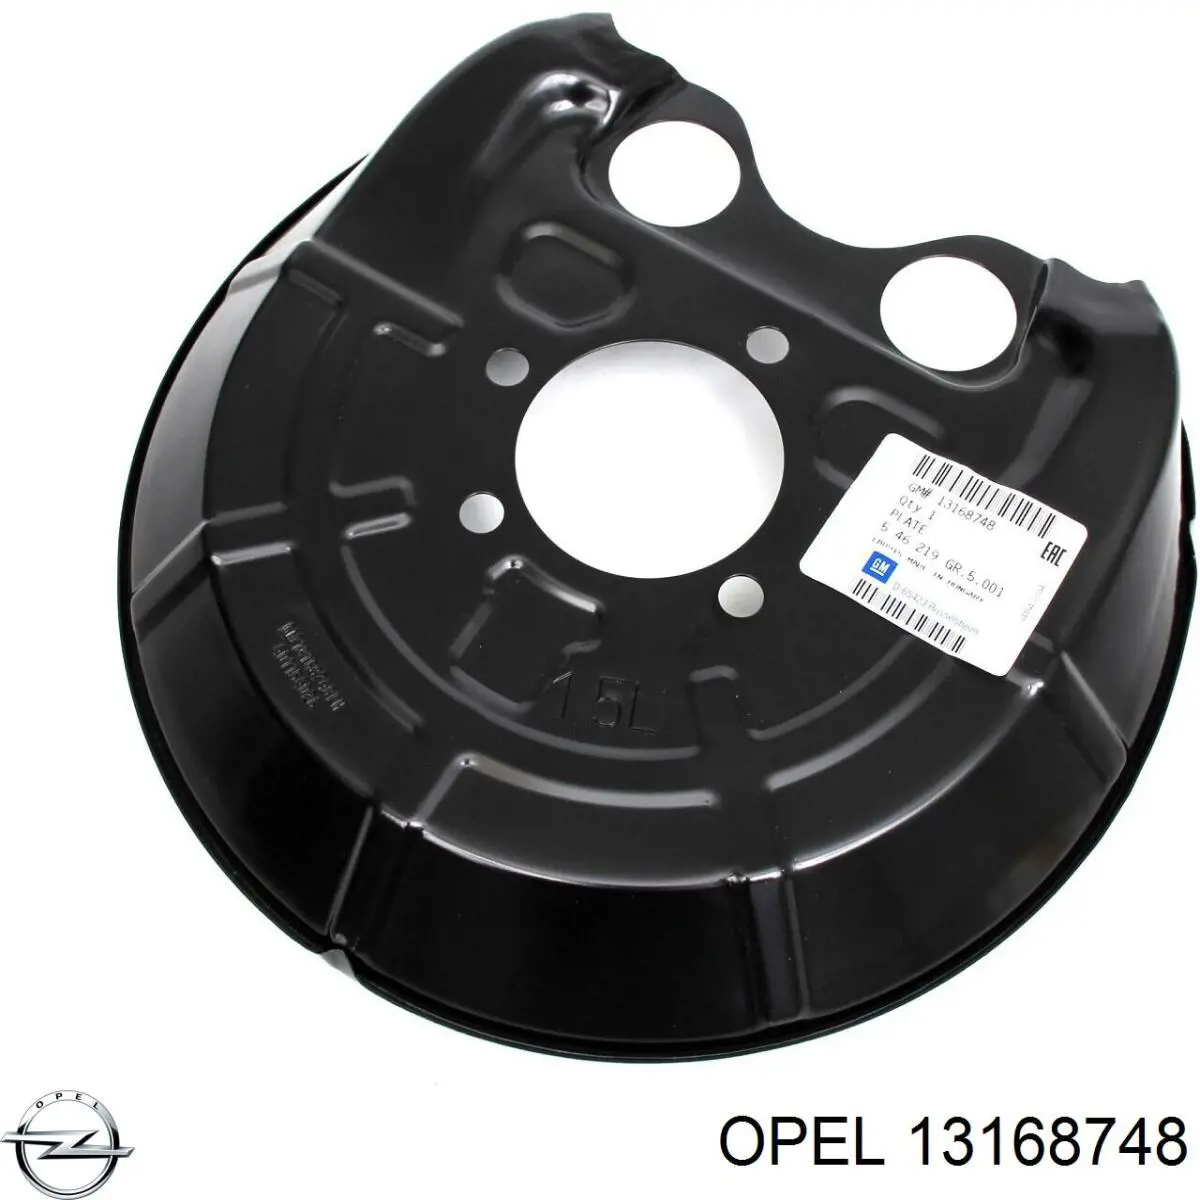 13168748 Opel proteção esquerda do freio de disco traseiro